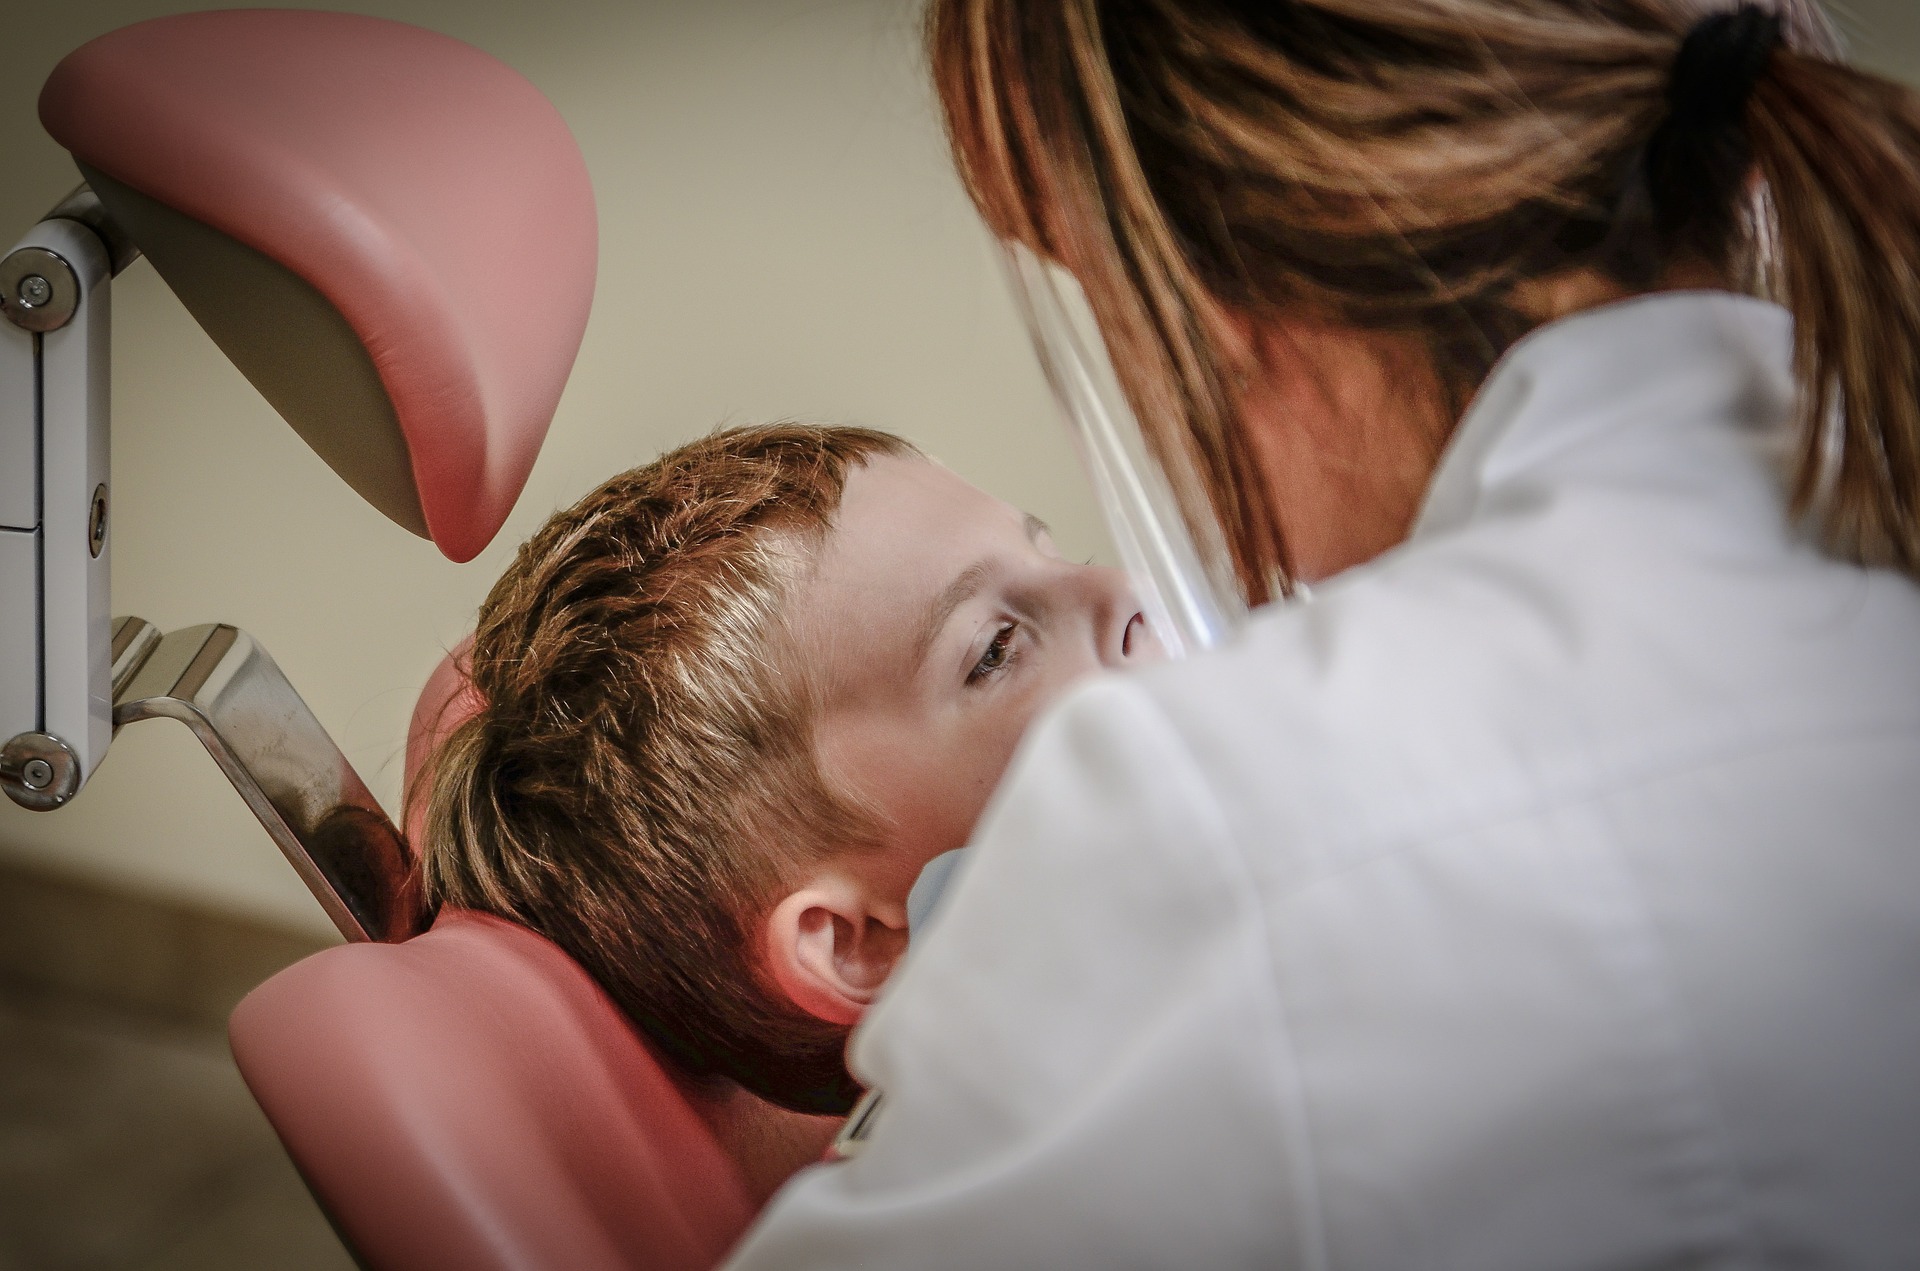 Je opravdu nutné chodit na preventivní prohlídky k zubnímu lékaři?